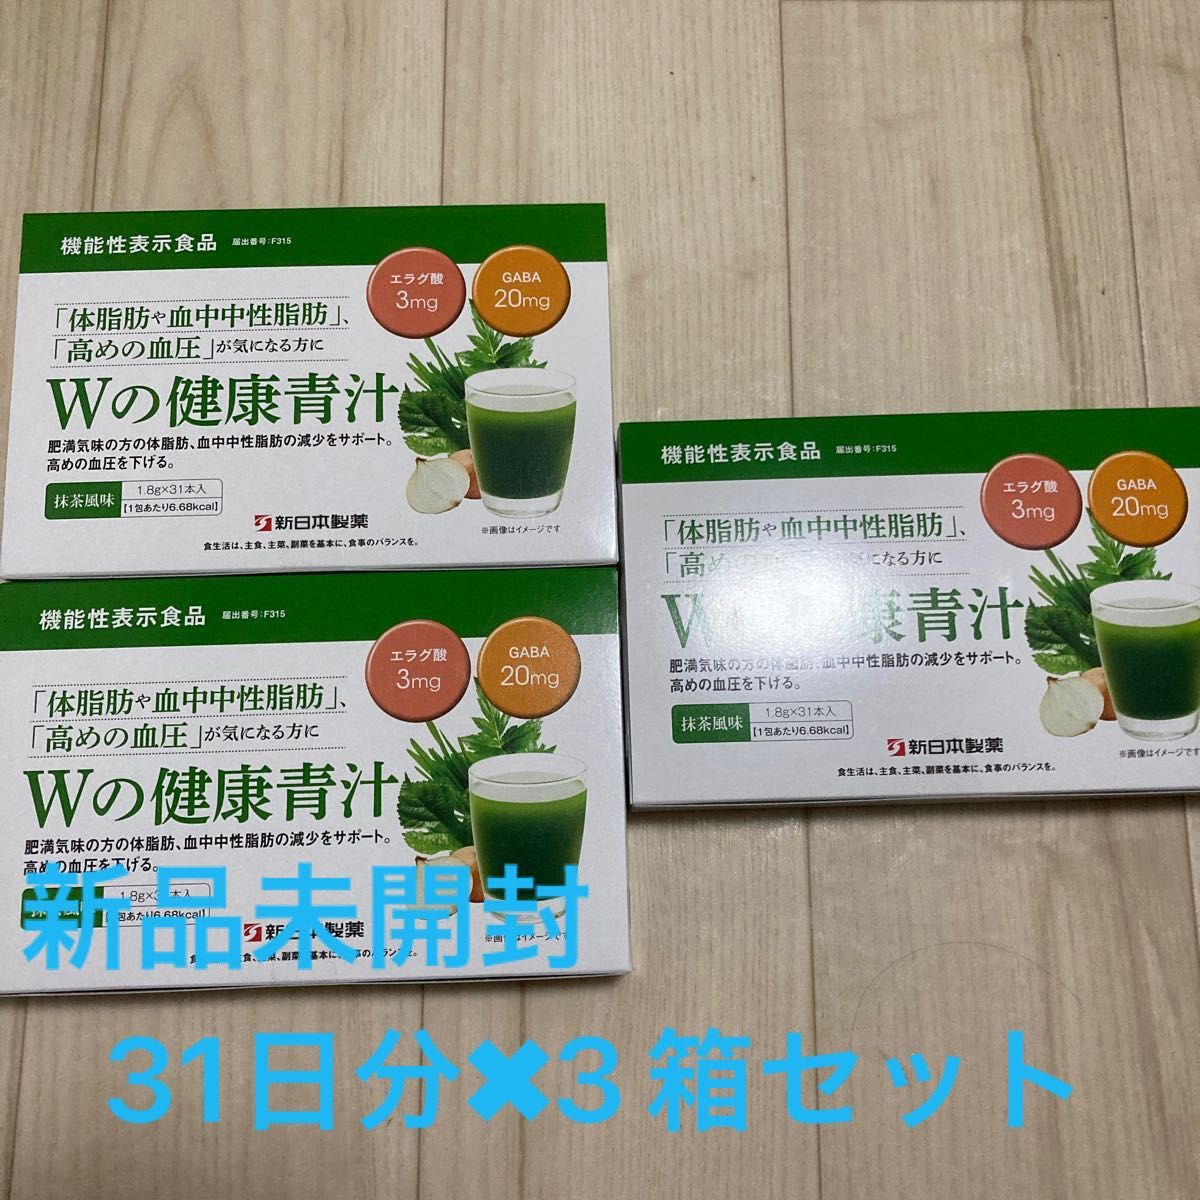 破格値下げ】 新日本製薬 生活習慣サポート Wの健康青汁 31包×2箱